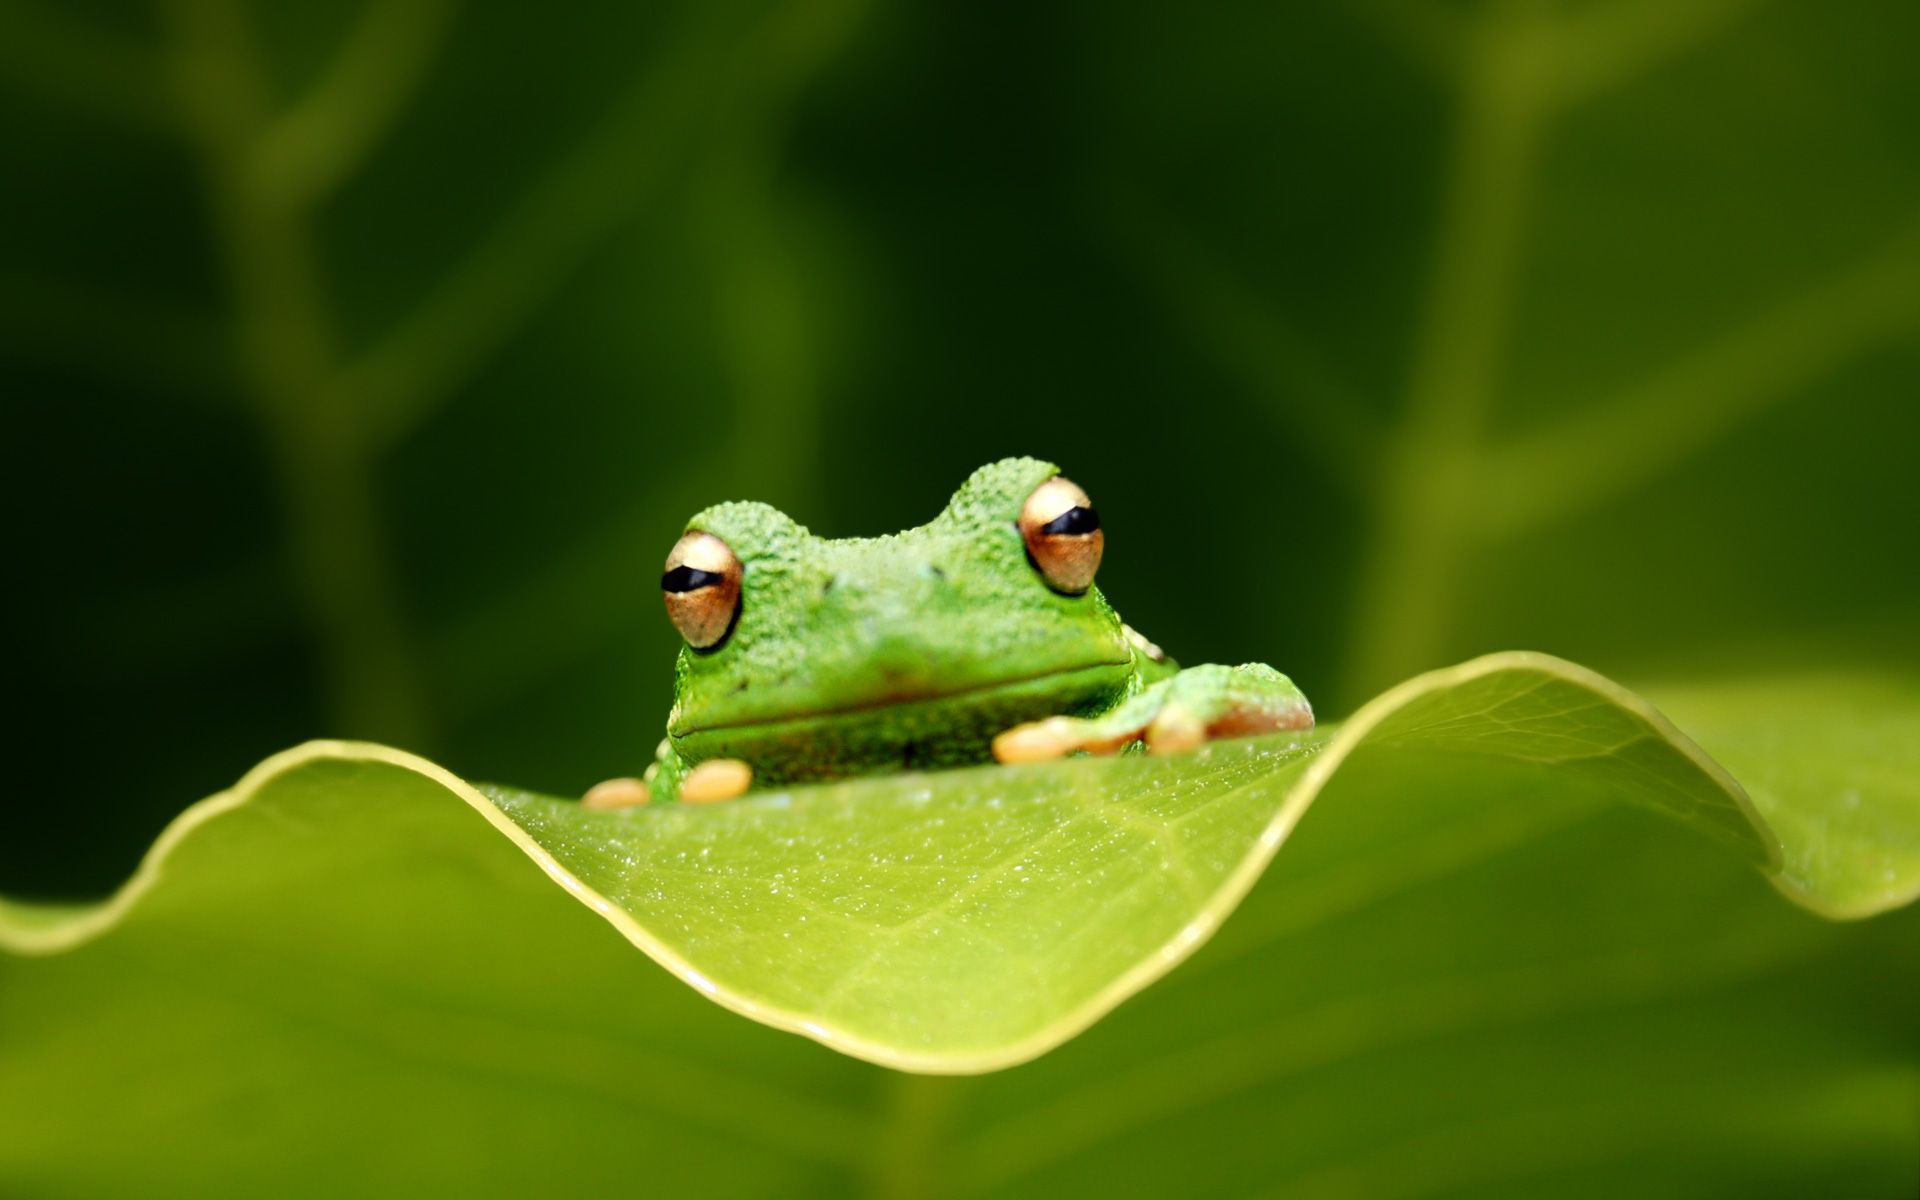 Cute Frogs Desktop Wallpapers  PixelsTalkNet